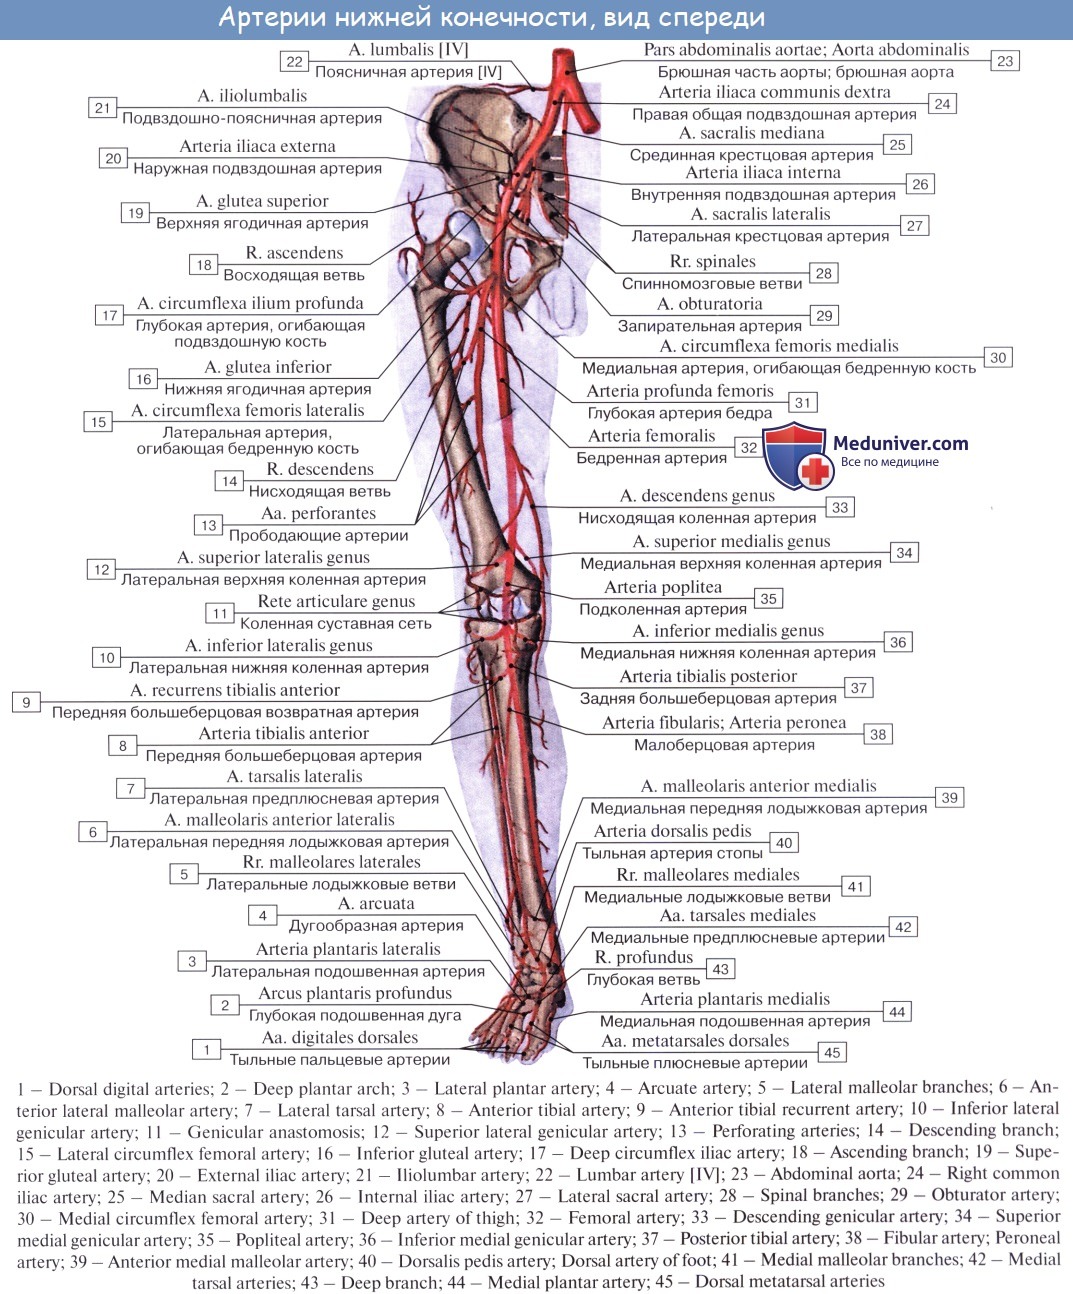 бедренная вена анатомия